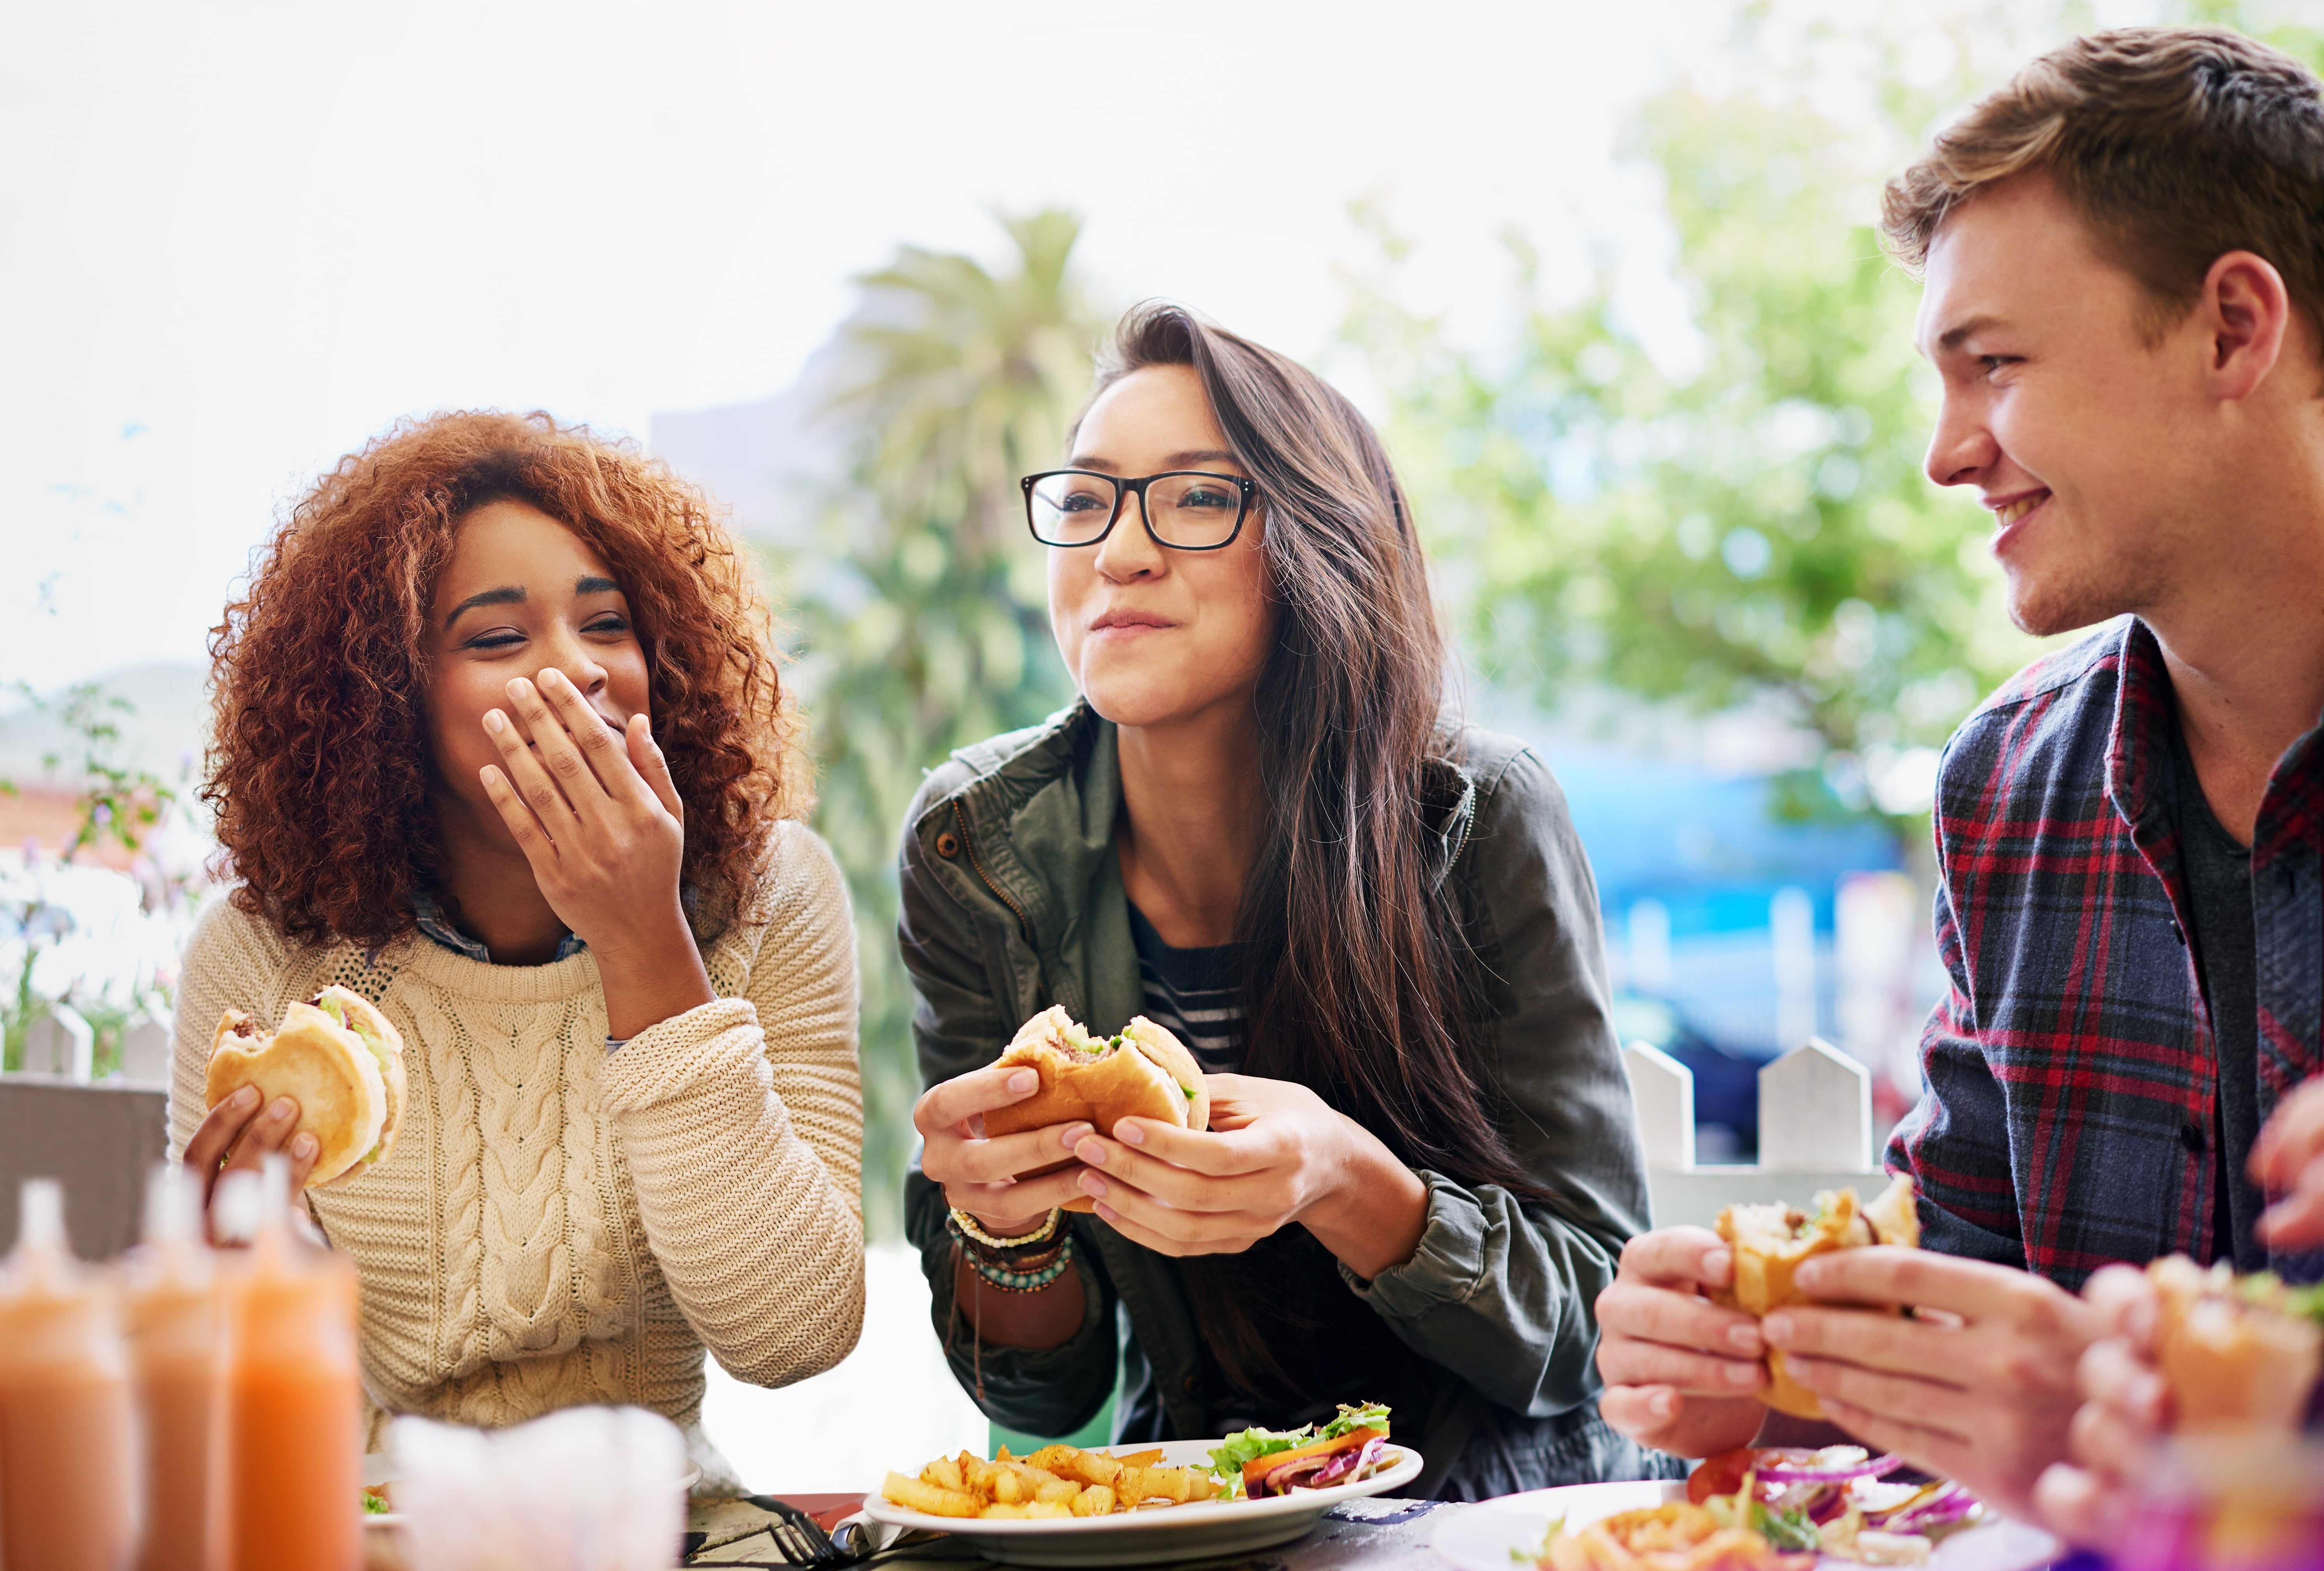 Imagem de um grupo de amigos com três pessoas, comendo hambúrger juntos, eles parecem felizes na situação.